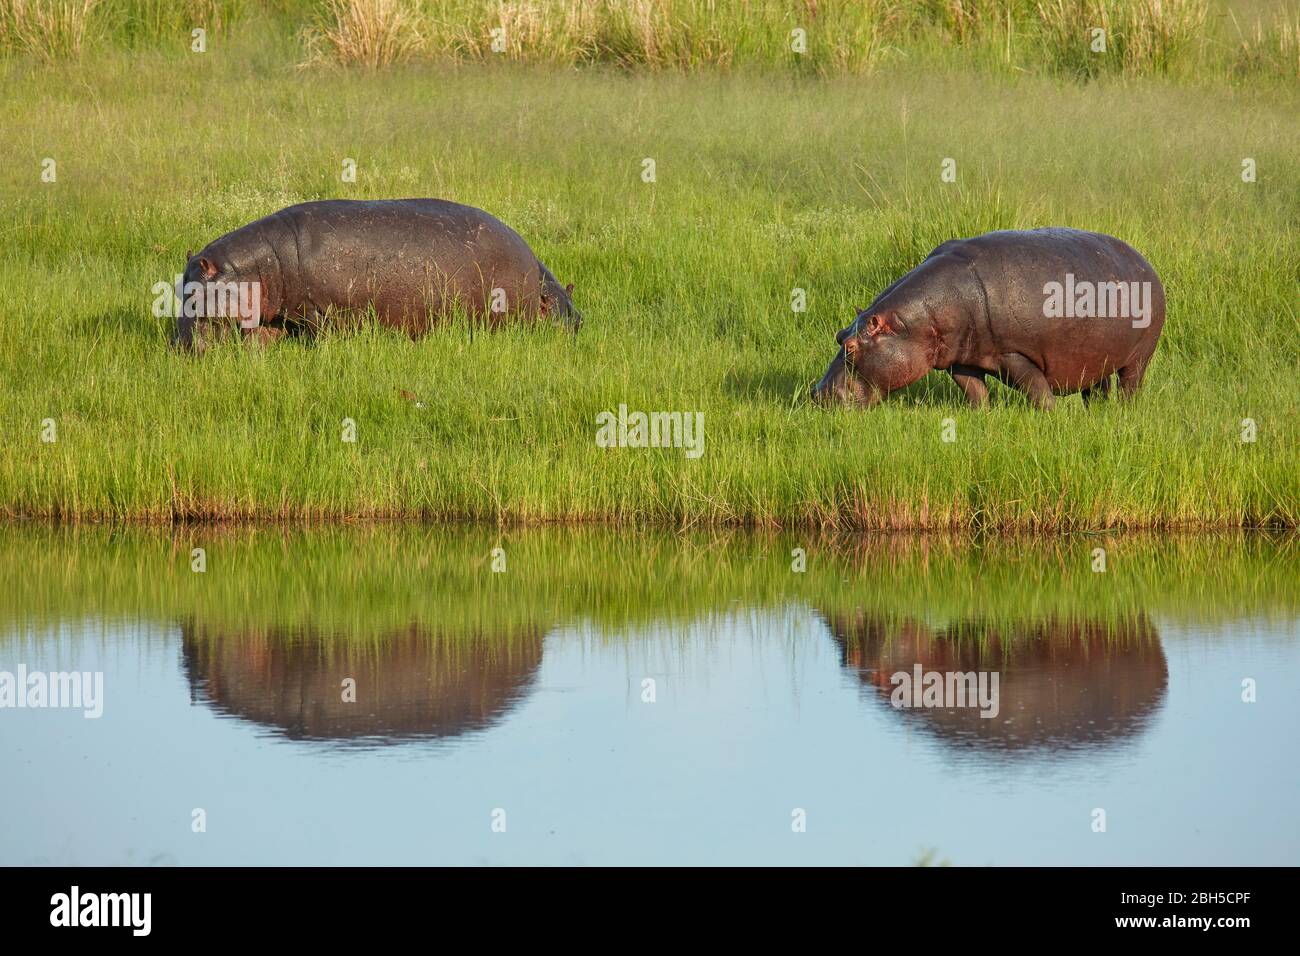 Hippopotamus (Hippopotamus amphibius), Chobe River, Chobe National Park, Kasane, Botswana, Africa Stock Photo